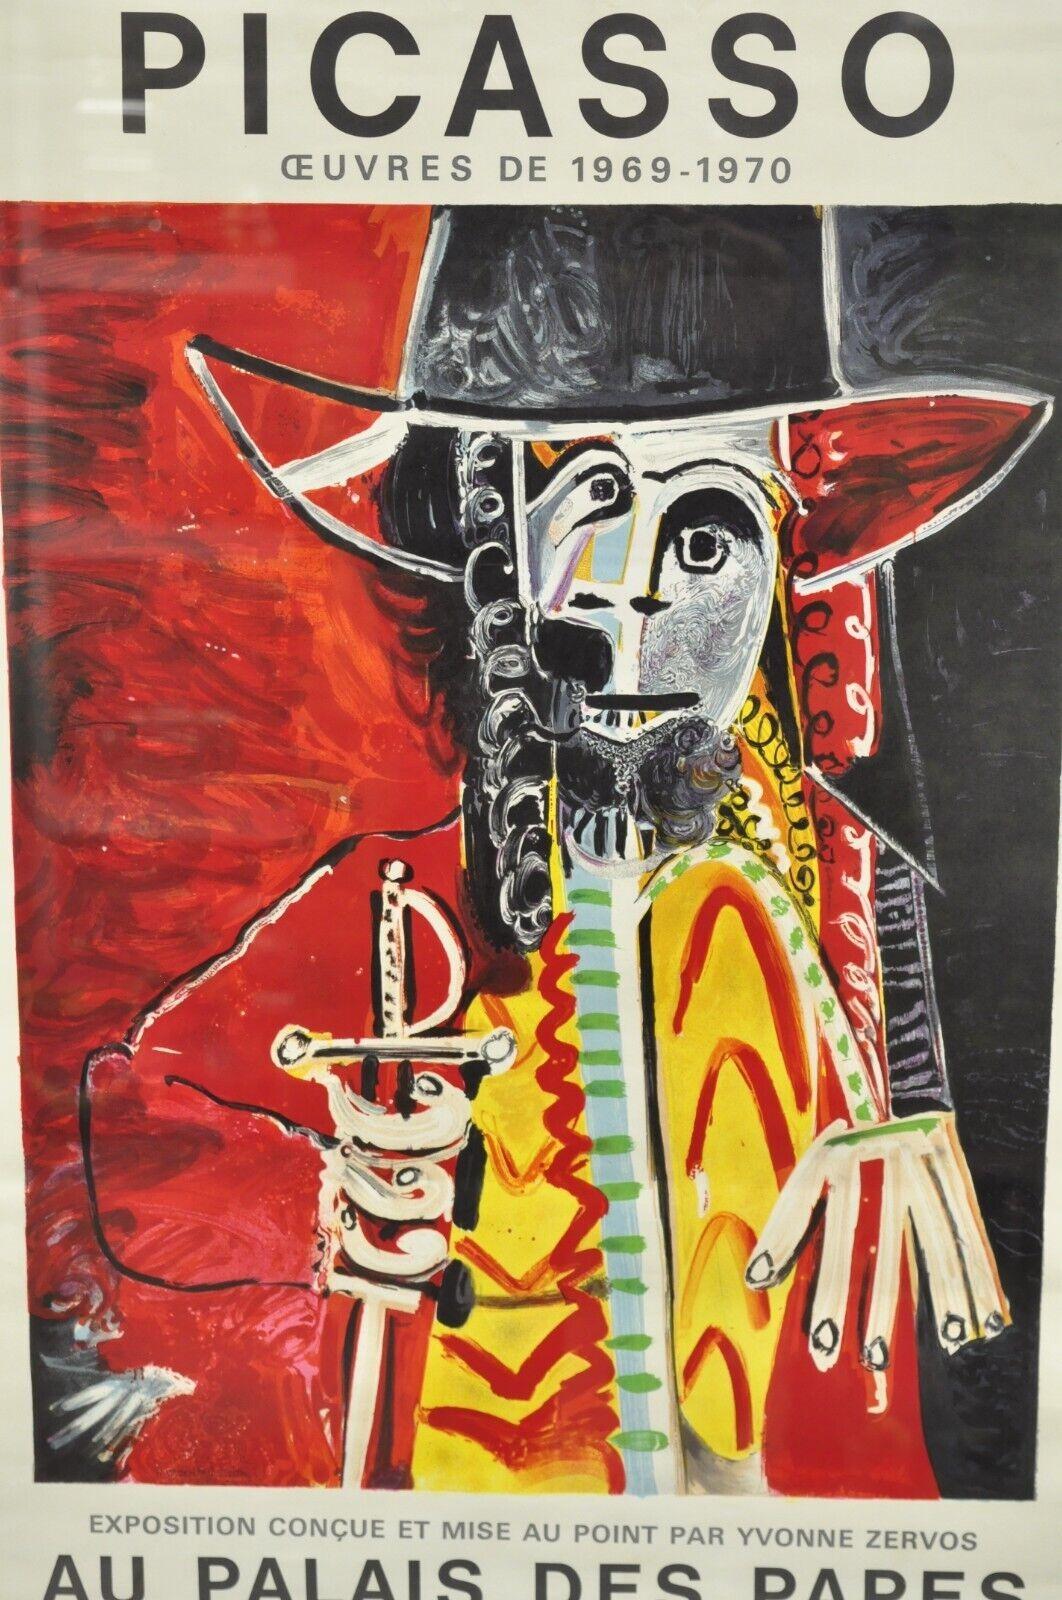 Expressionist 1970 Pablo Picasso Festival D'Avignon Au Palais des Papes Lithograph Poster For Sale